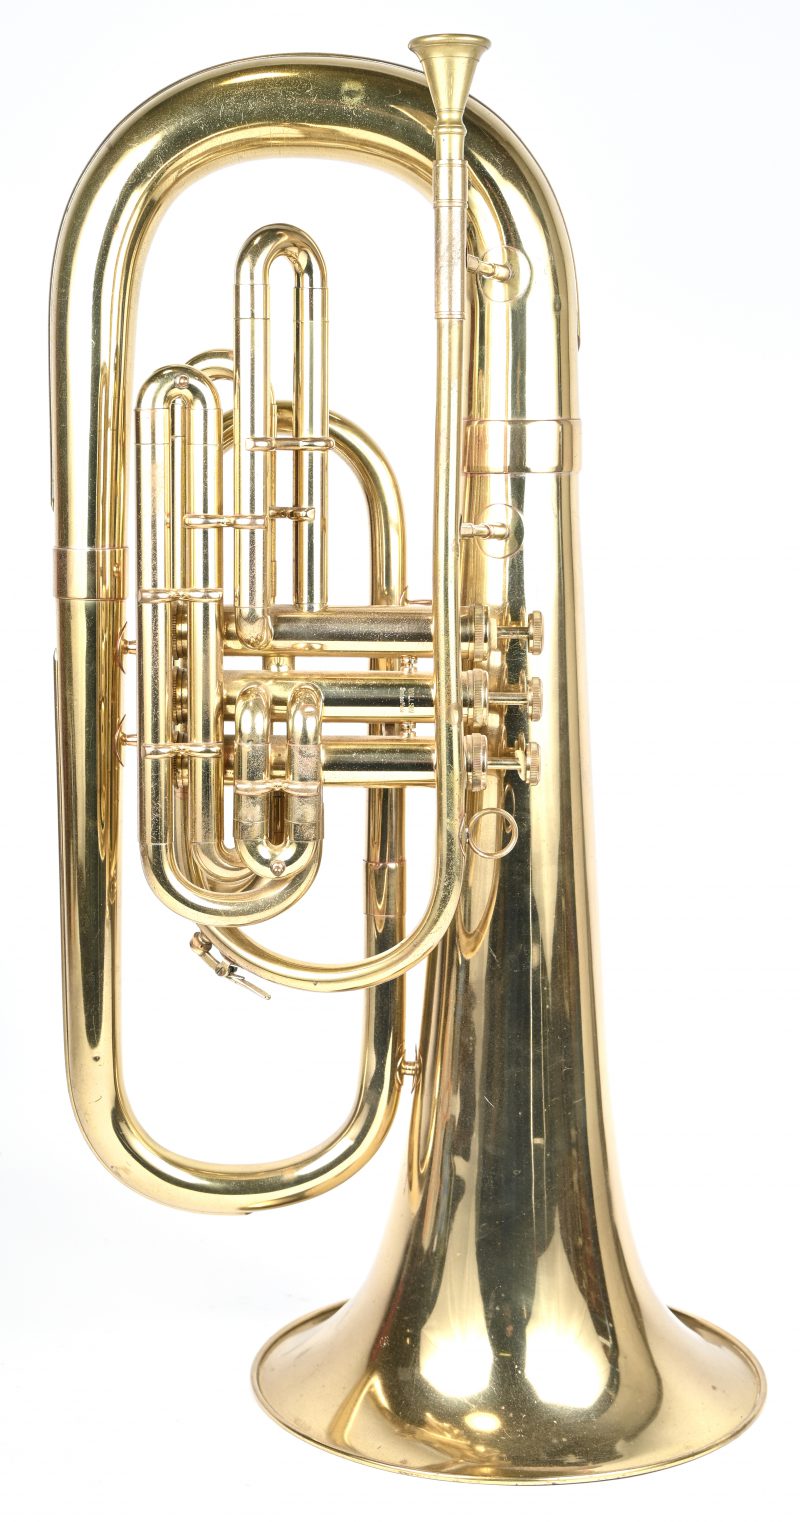 Een tuba, gemerkt D.E.G. Dynasty en Willson ‘Swiss made’. Serie nummer 27759. Met knoppen ingelegd met parelmoer. Recent onderhouden en in werkende staat. In originele draagtas met toebehoren.